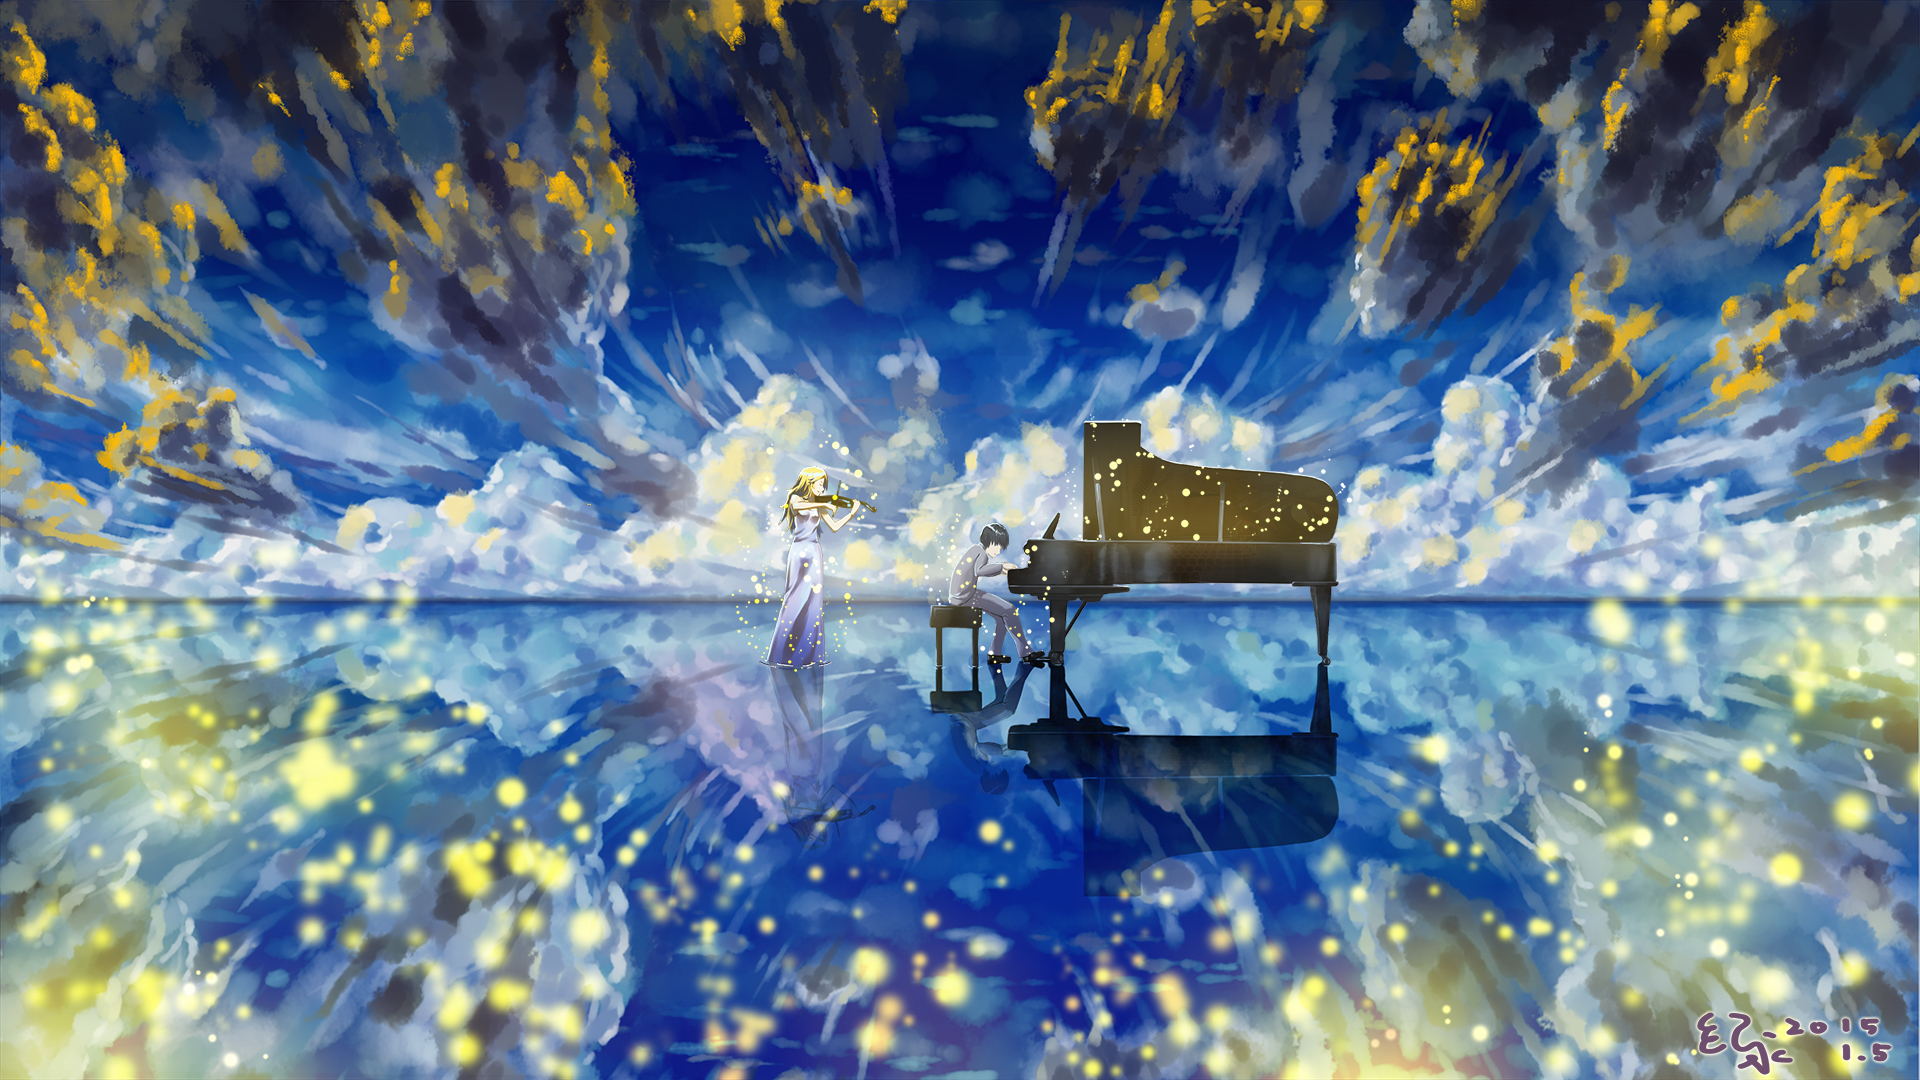 Shigatsu wa Kimi no Uso OST - 1 Hour Beautiful Relaxing Piano Music (四月は君の嘘  Soundtracks) 